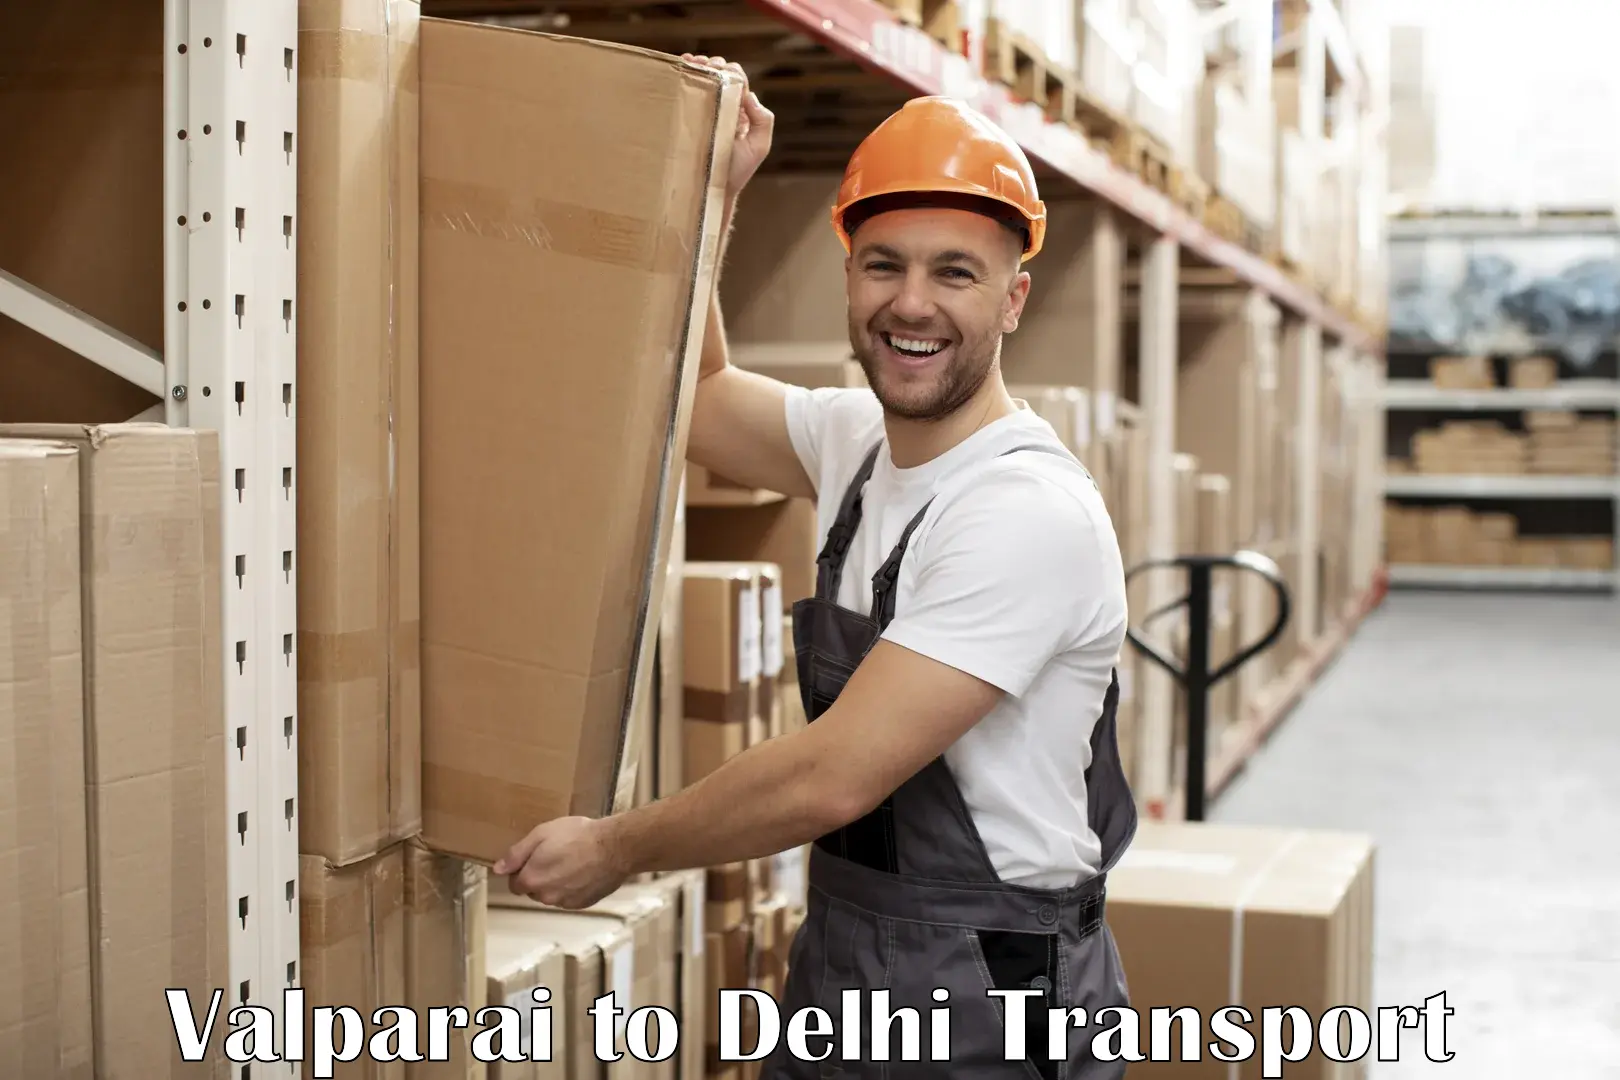 Daily transport service Valparai to University of Delhi